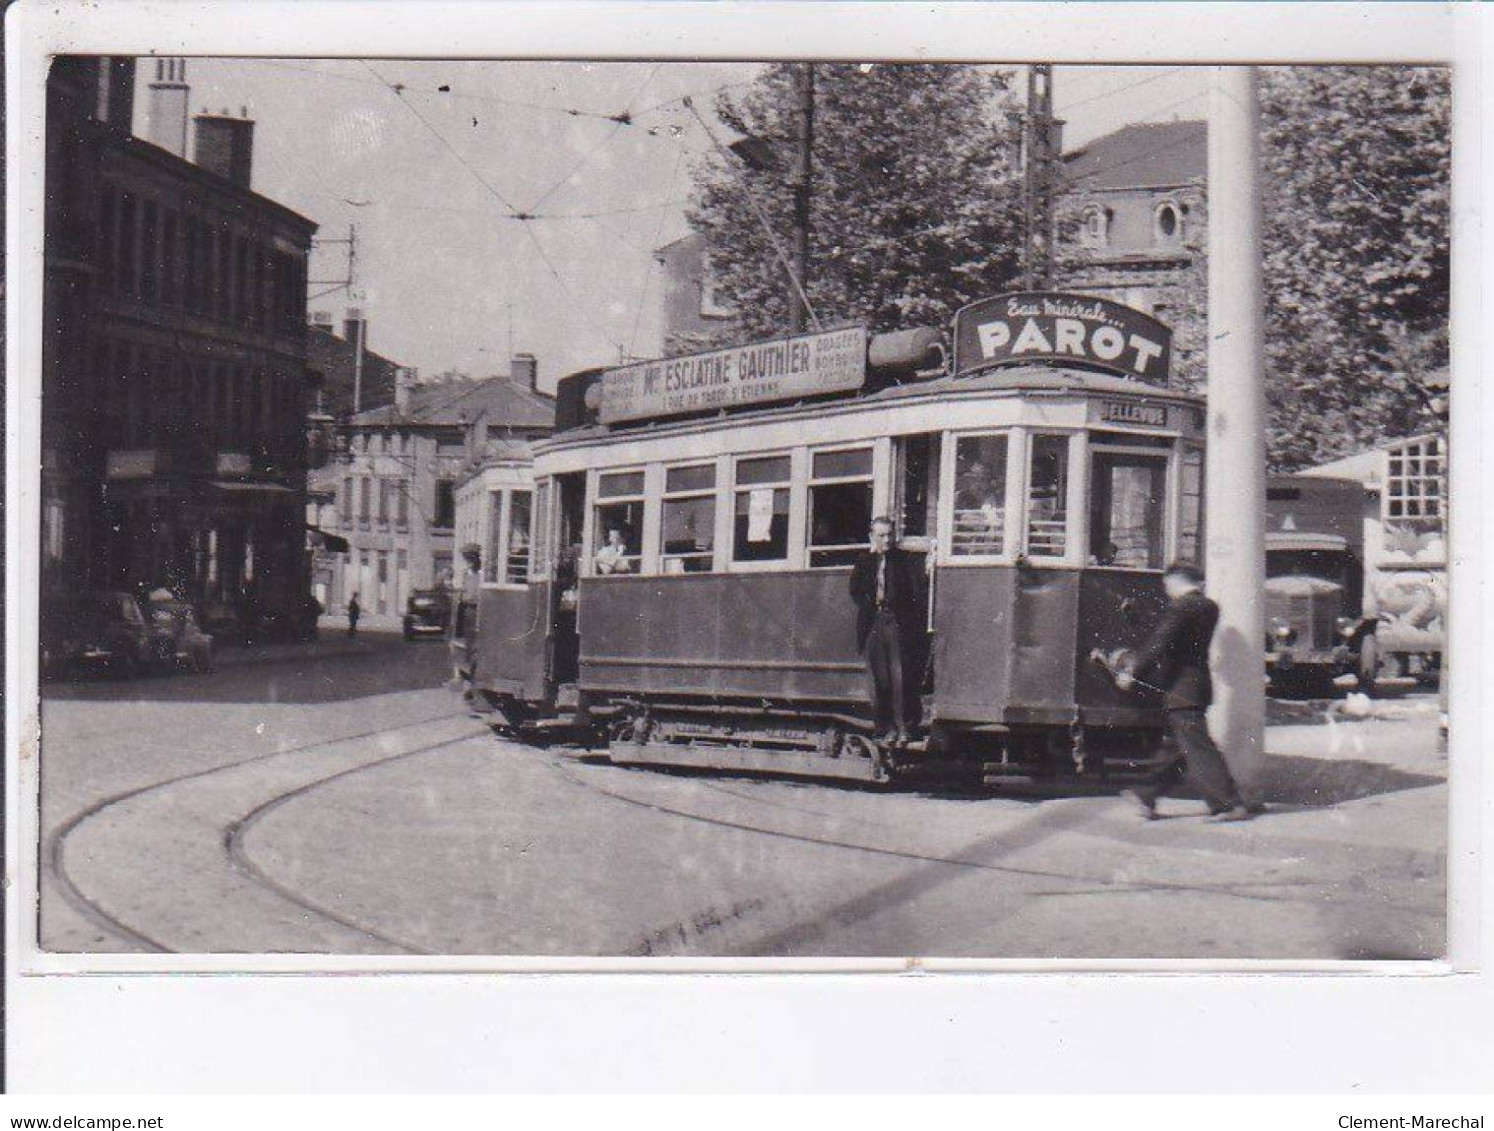 SAINT-ETIENNE: Tramway, Environs 1950, Parot, Esclatine Gauthier - état - Saint Etienne